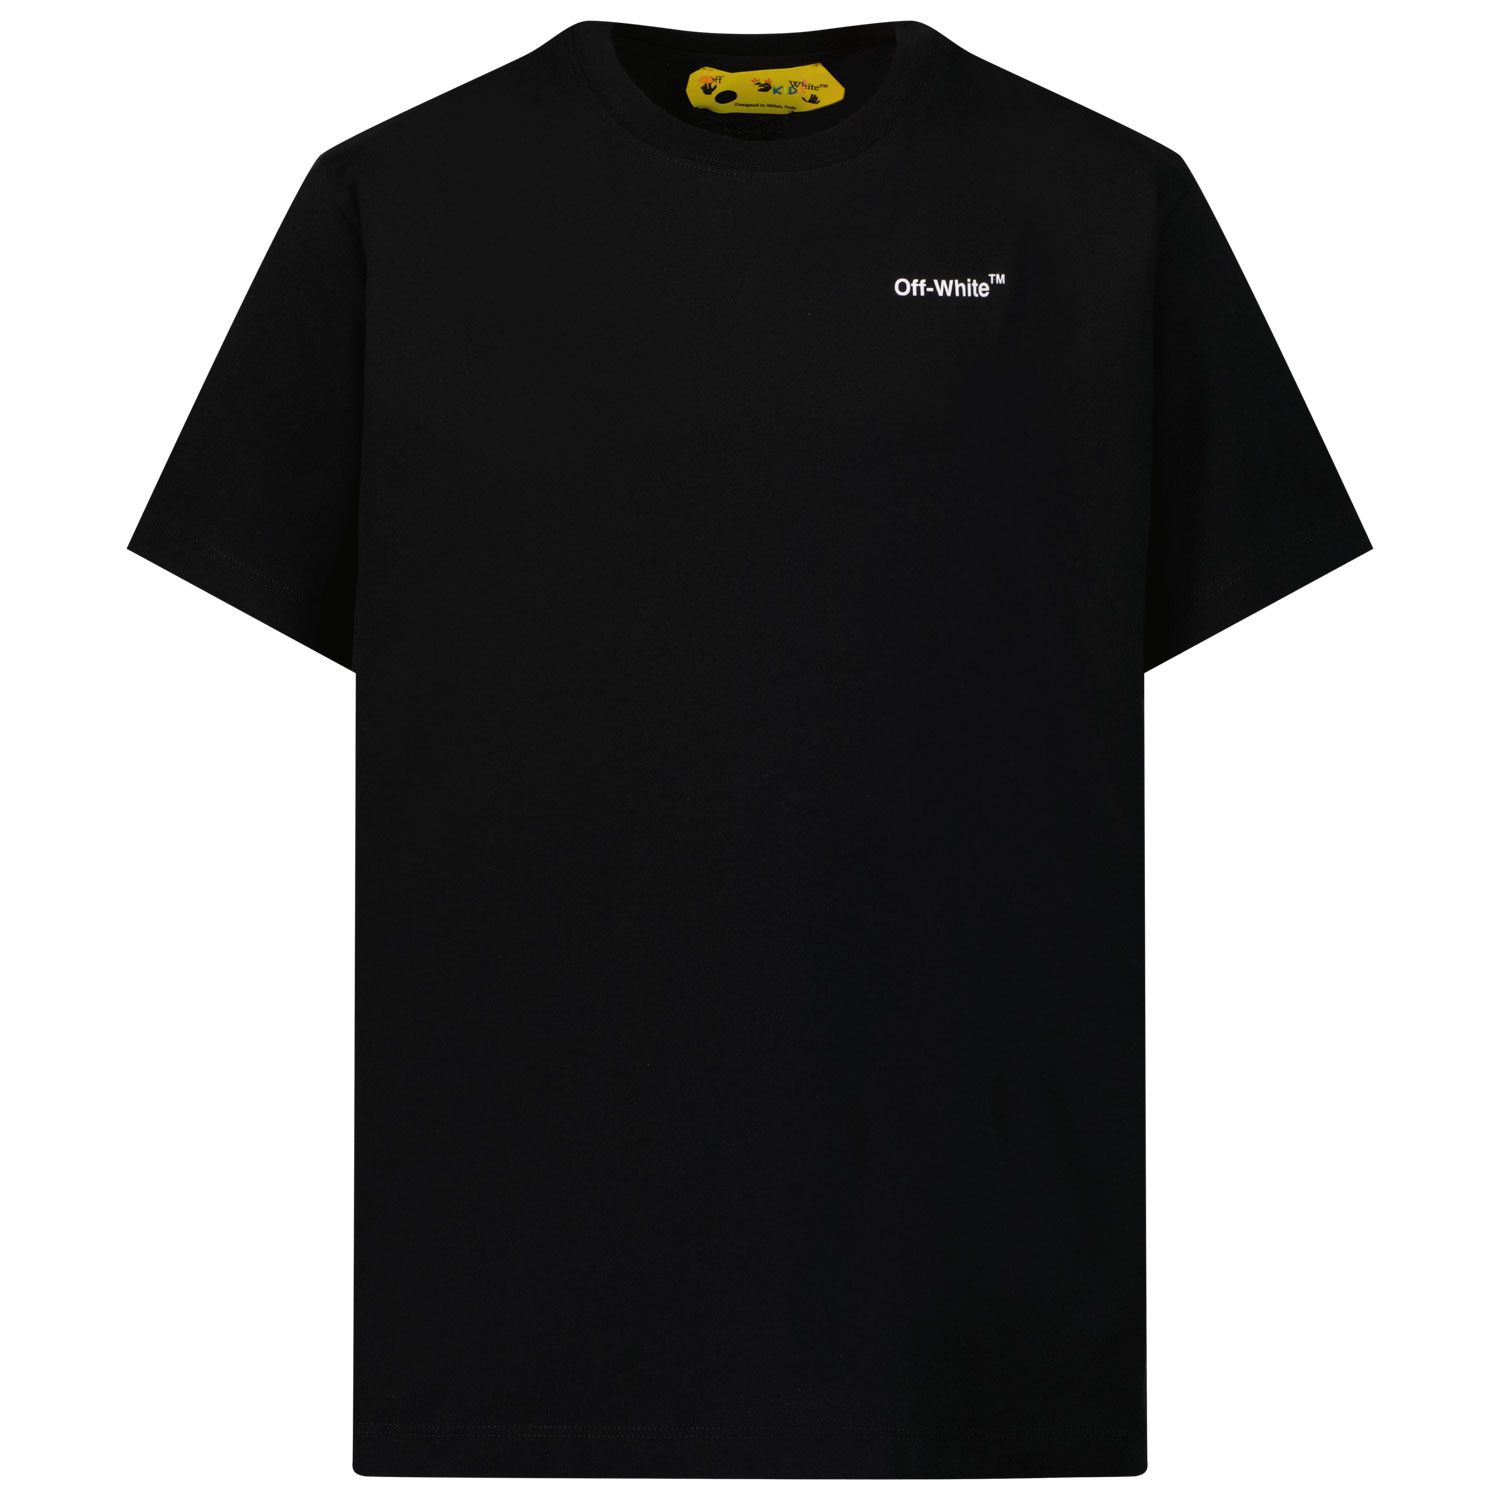 Afbeelding van Off-White OBAA005C99JER001 kinder t-shirt zwart/geel